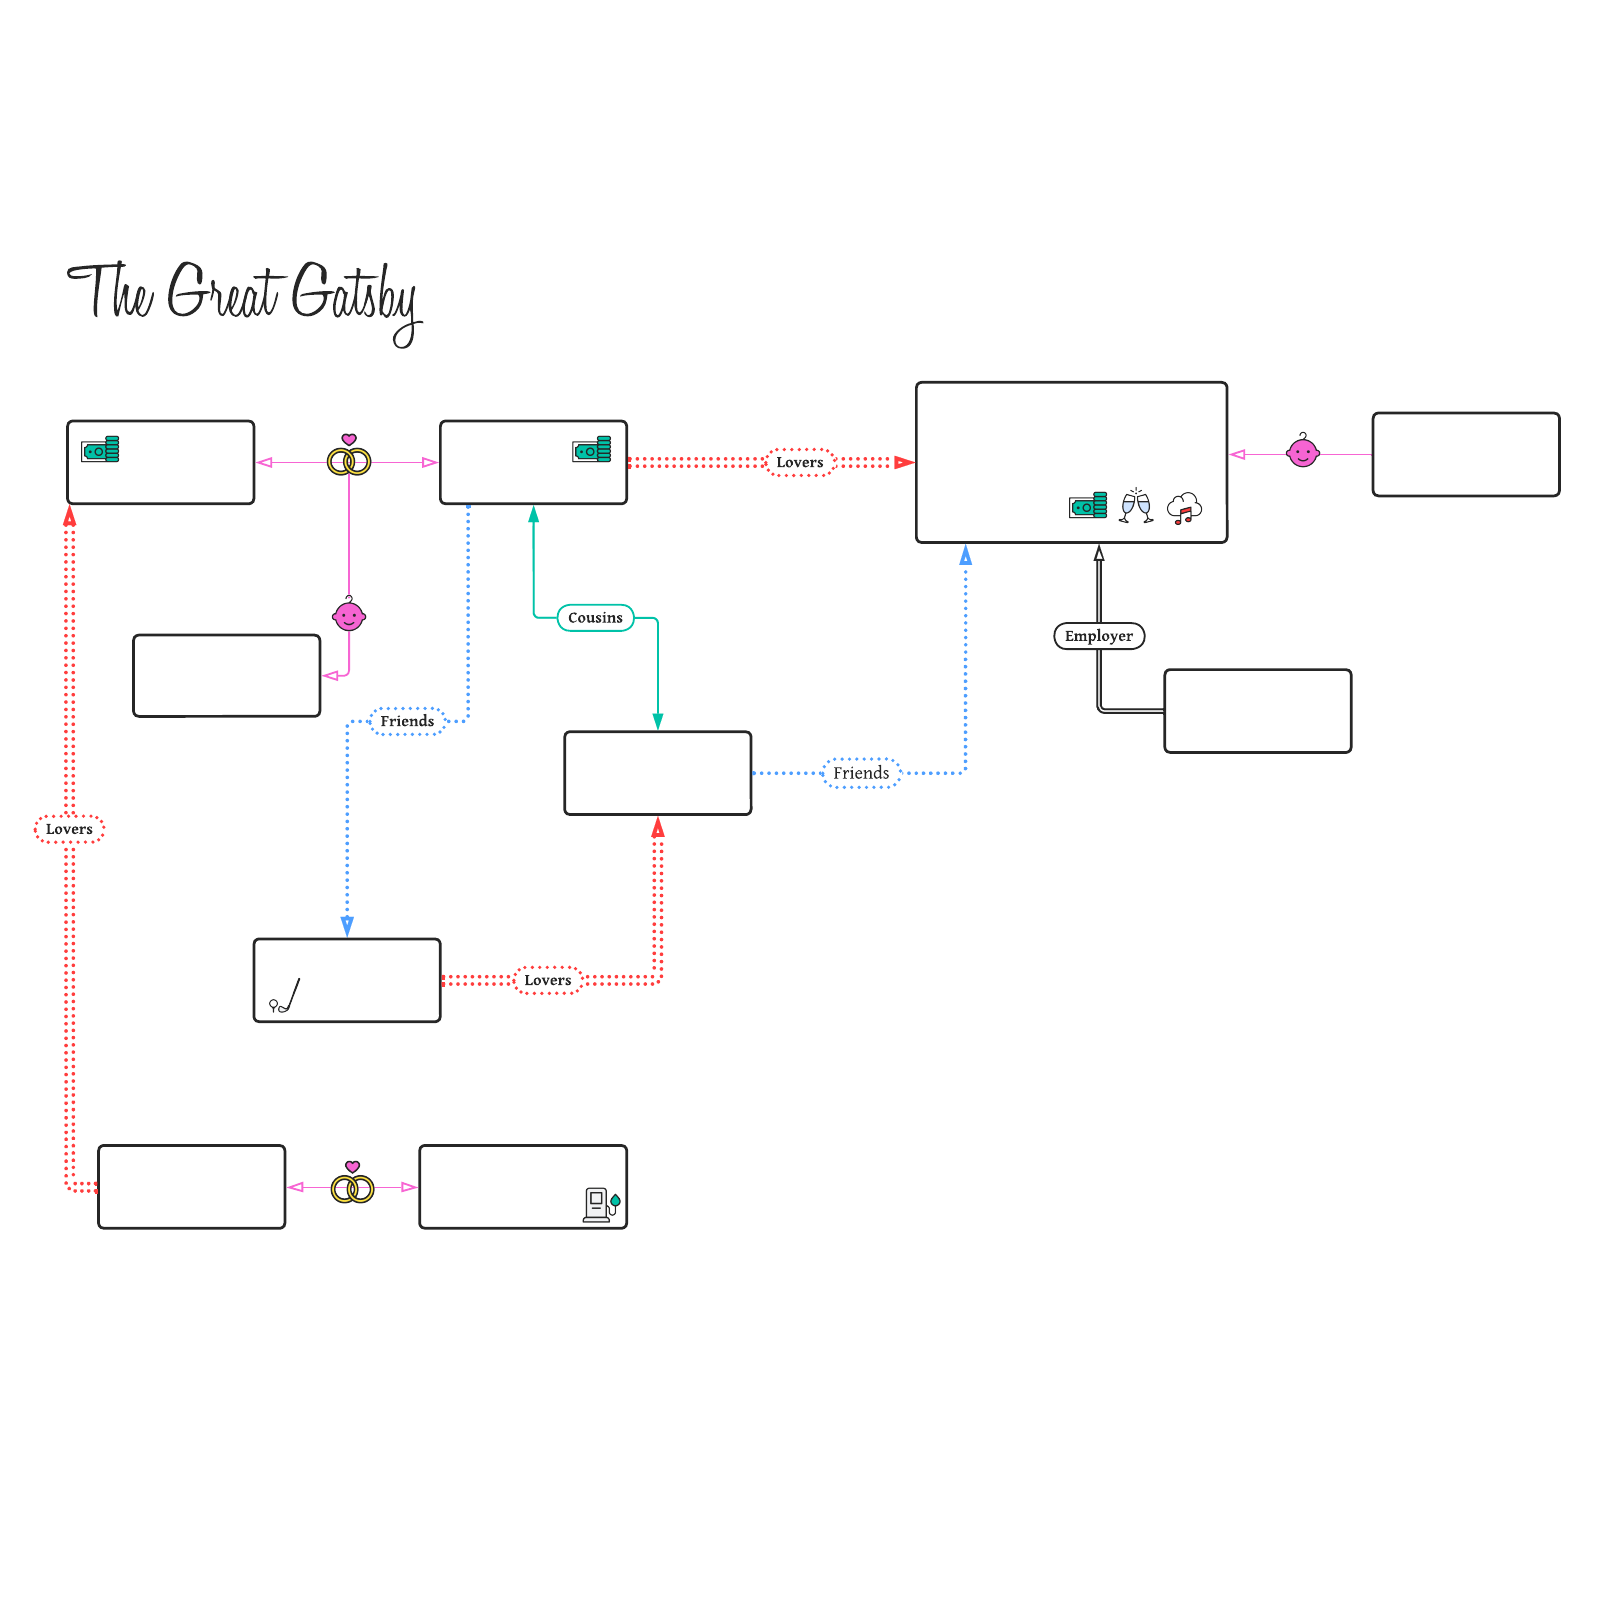 The Great Gatsby family tree example